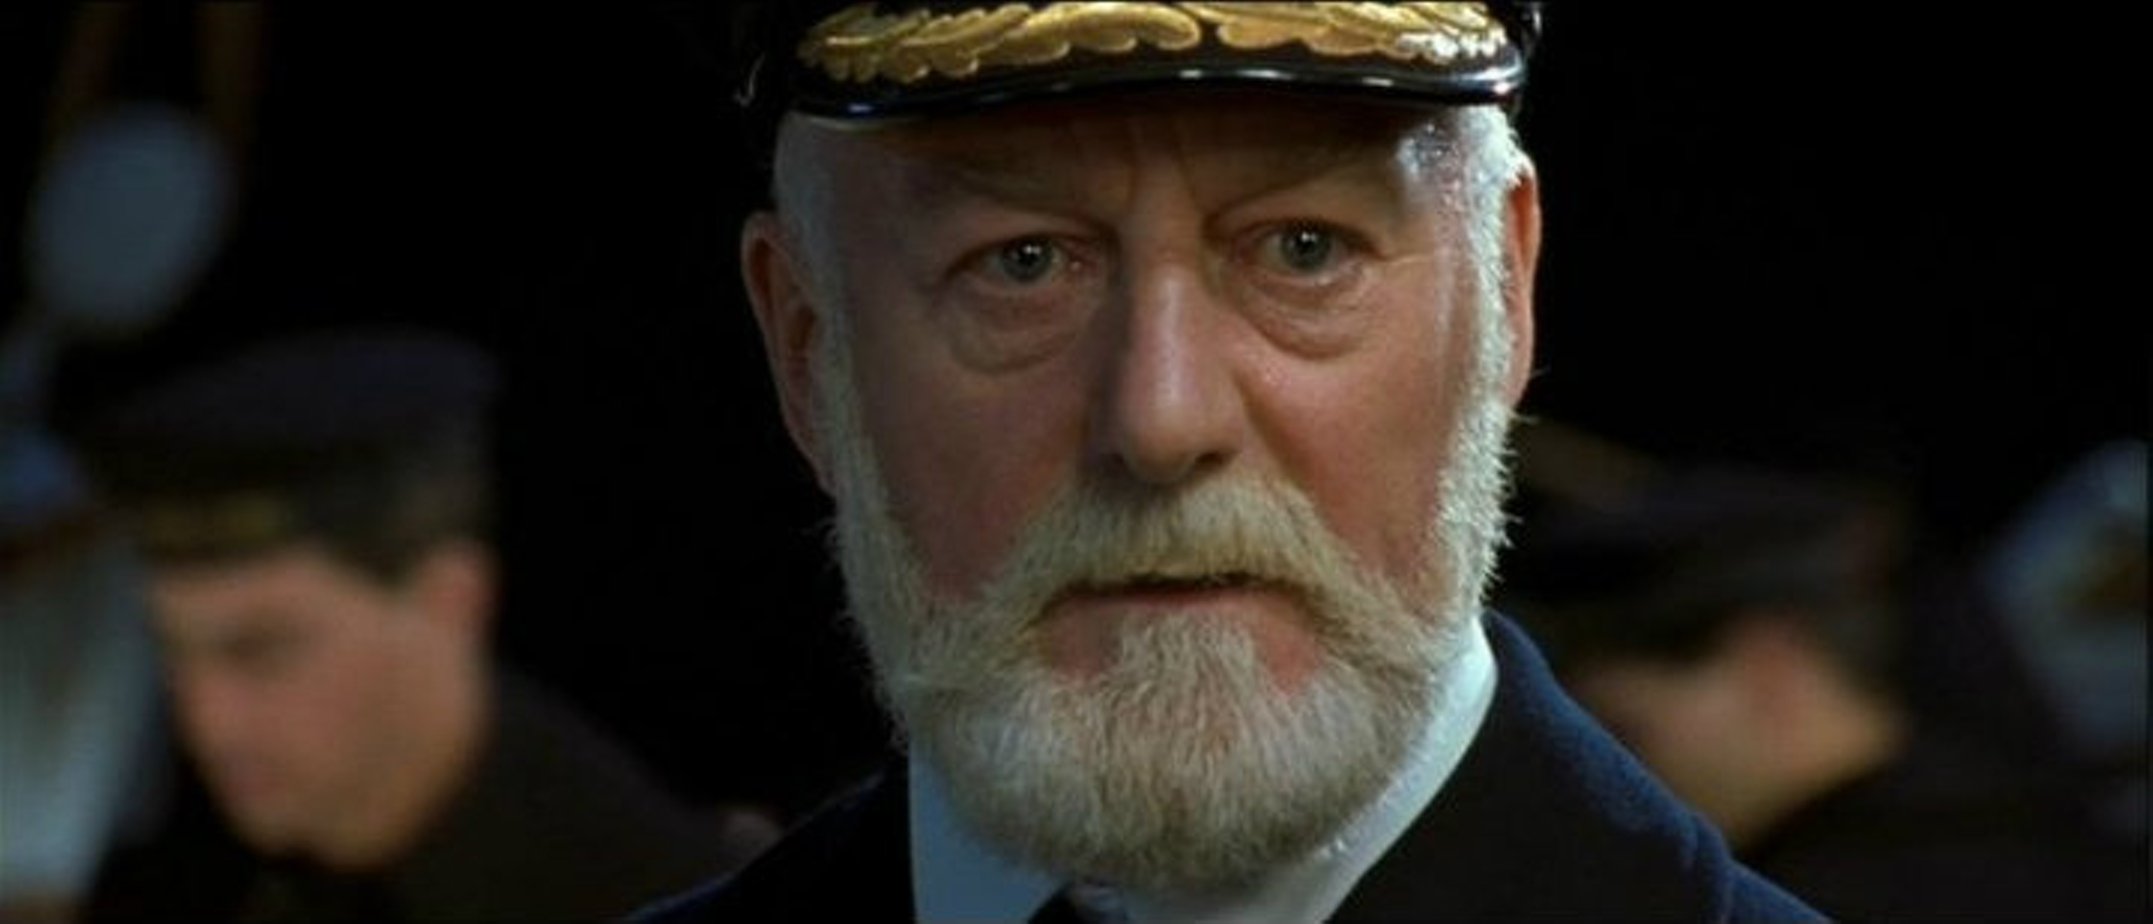 Туда где был капитаном корабля. Бернард Хилл Титаник. Титаник 1997 Смит. Титаник 1997 Капитан. Bernard Hill 1997 Титаник.